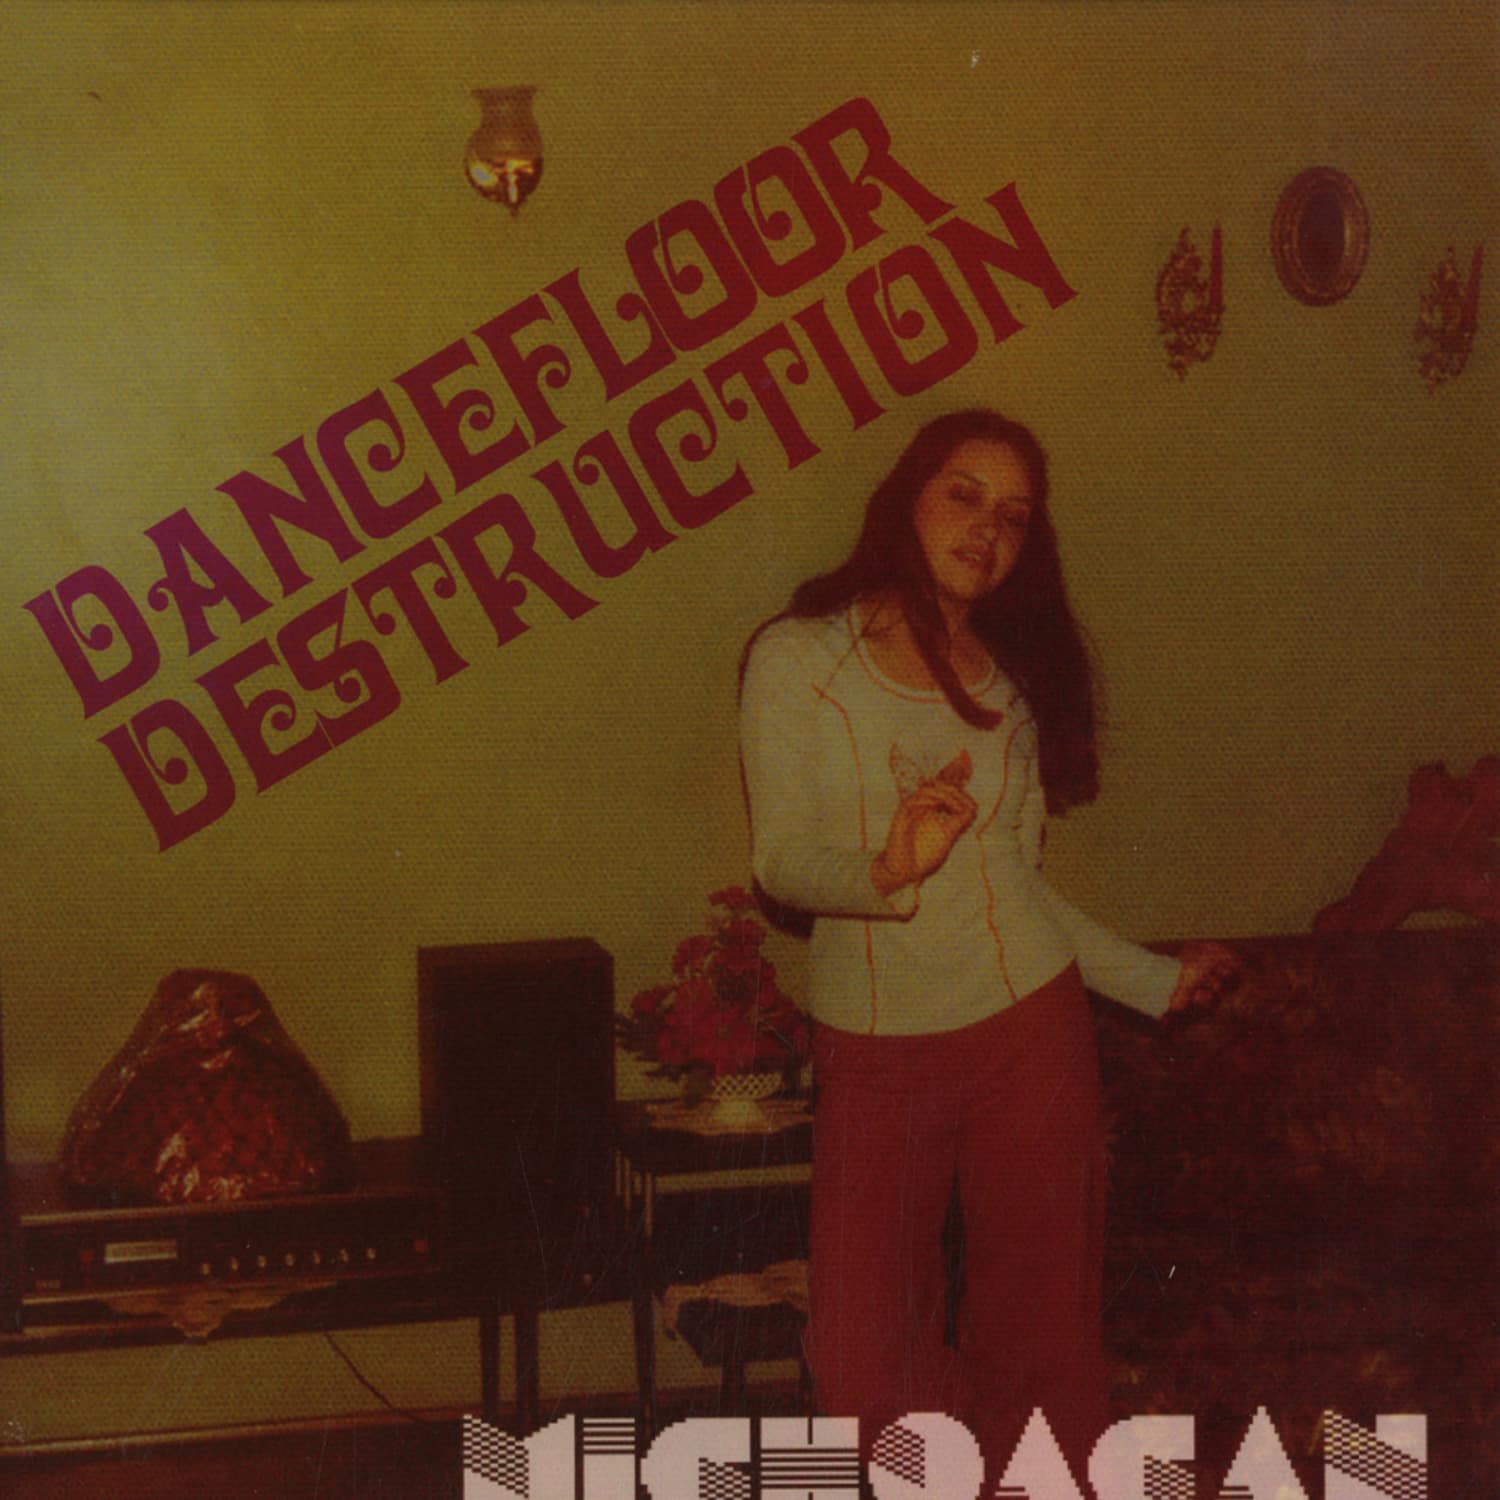 Michoacan - DANCEFLOOR DESTRUCTION EP